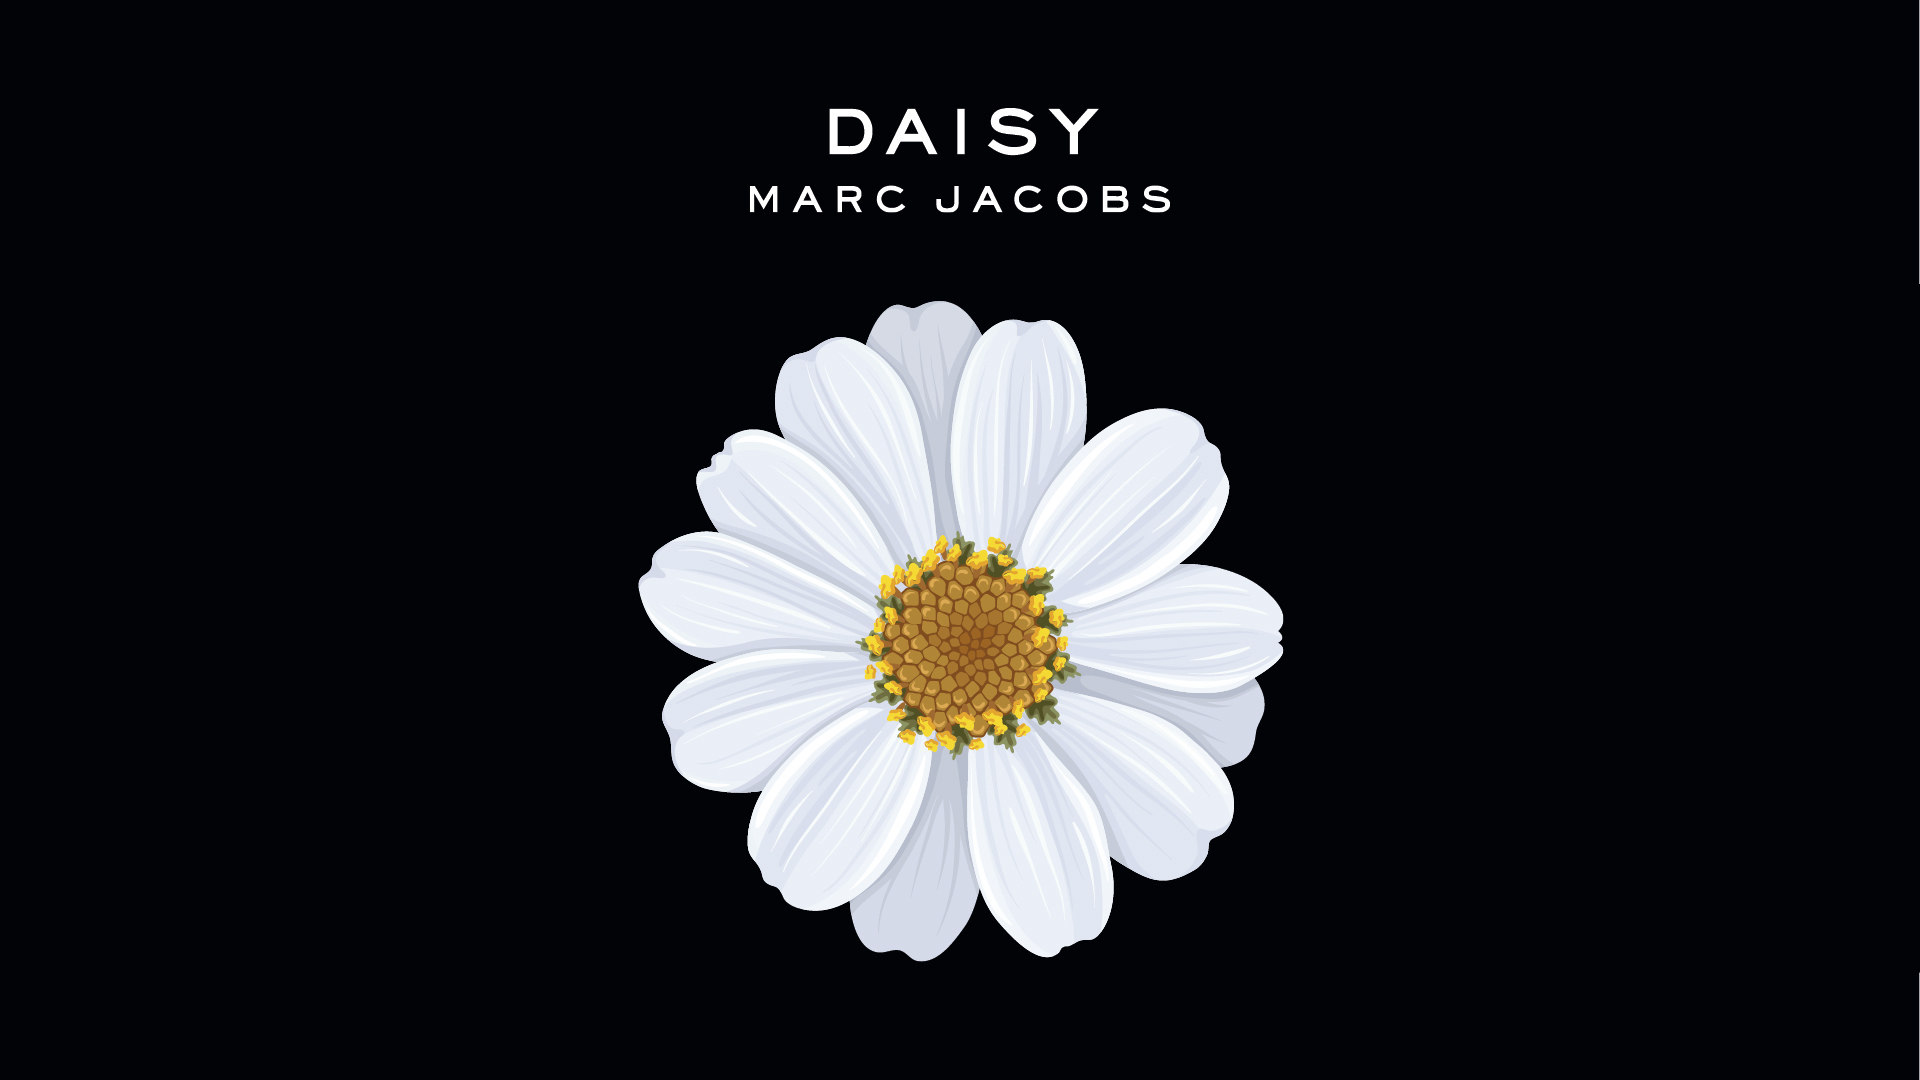 Marc Jacobs' hvide Daisy-blomst på en sort baggrund,